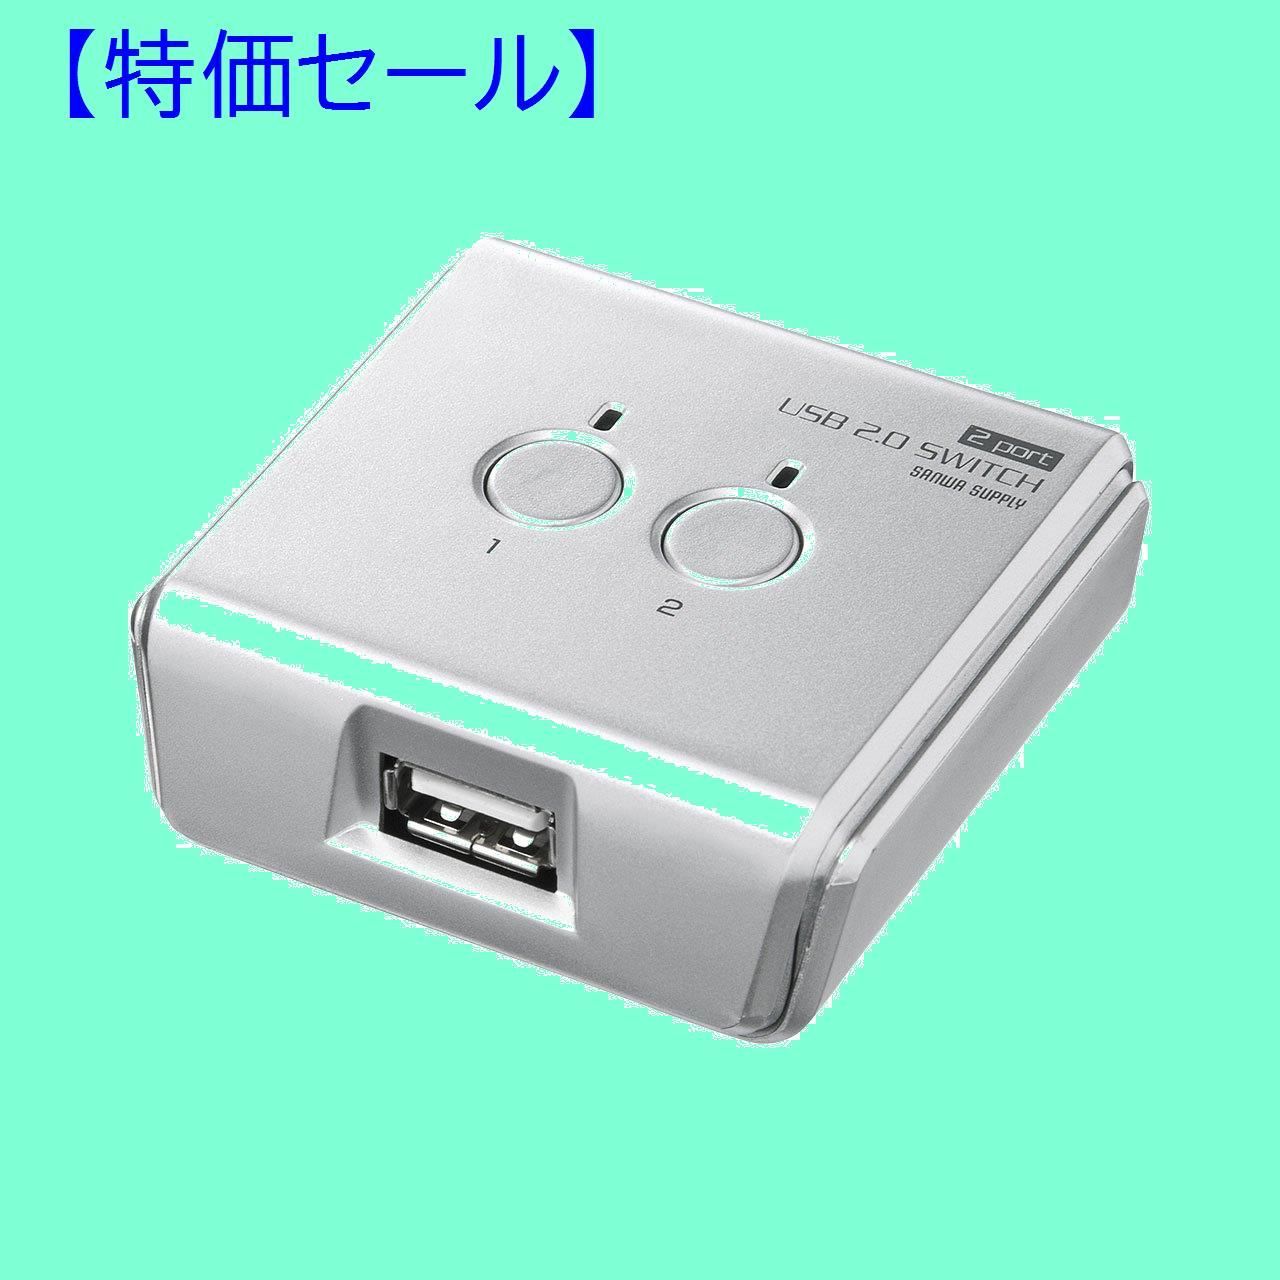 サンワサプライ USB2.0手動切替器(2回路) SW-US22N - 分配器、切替器